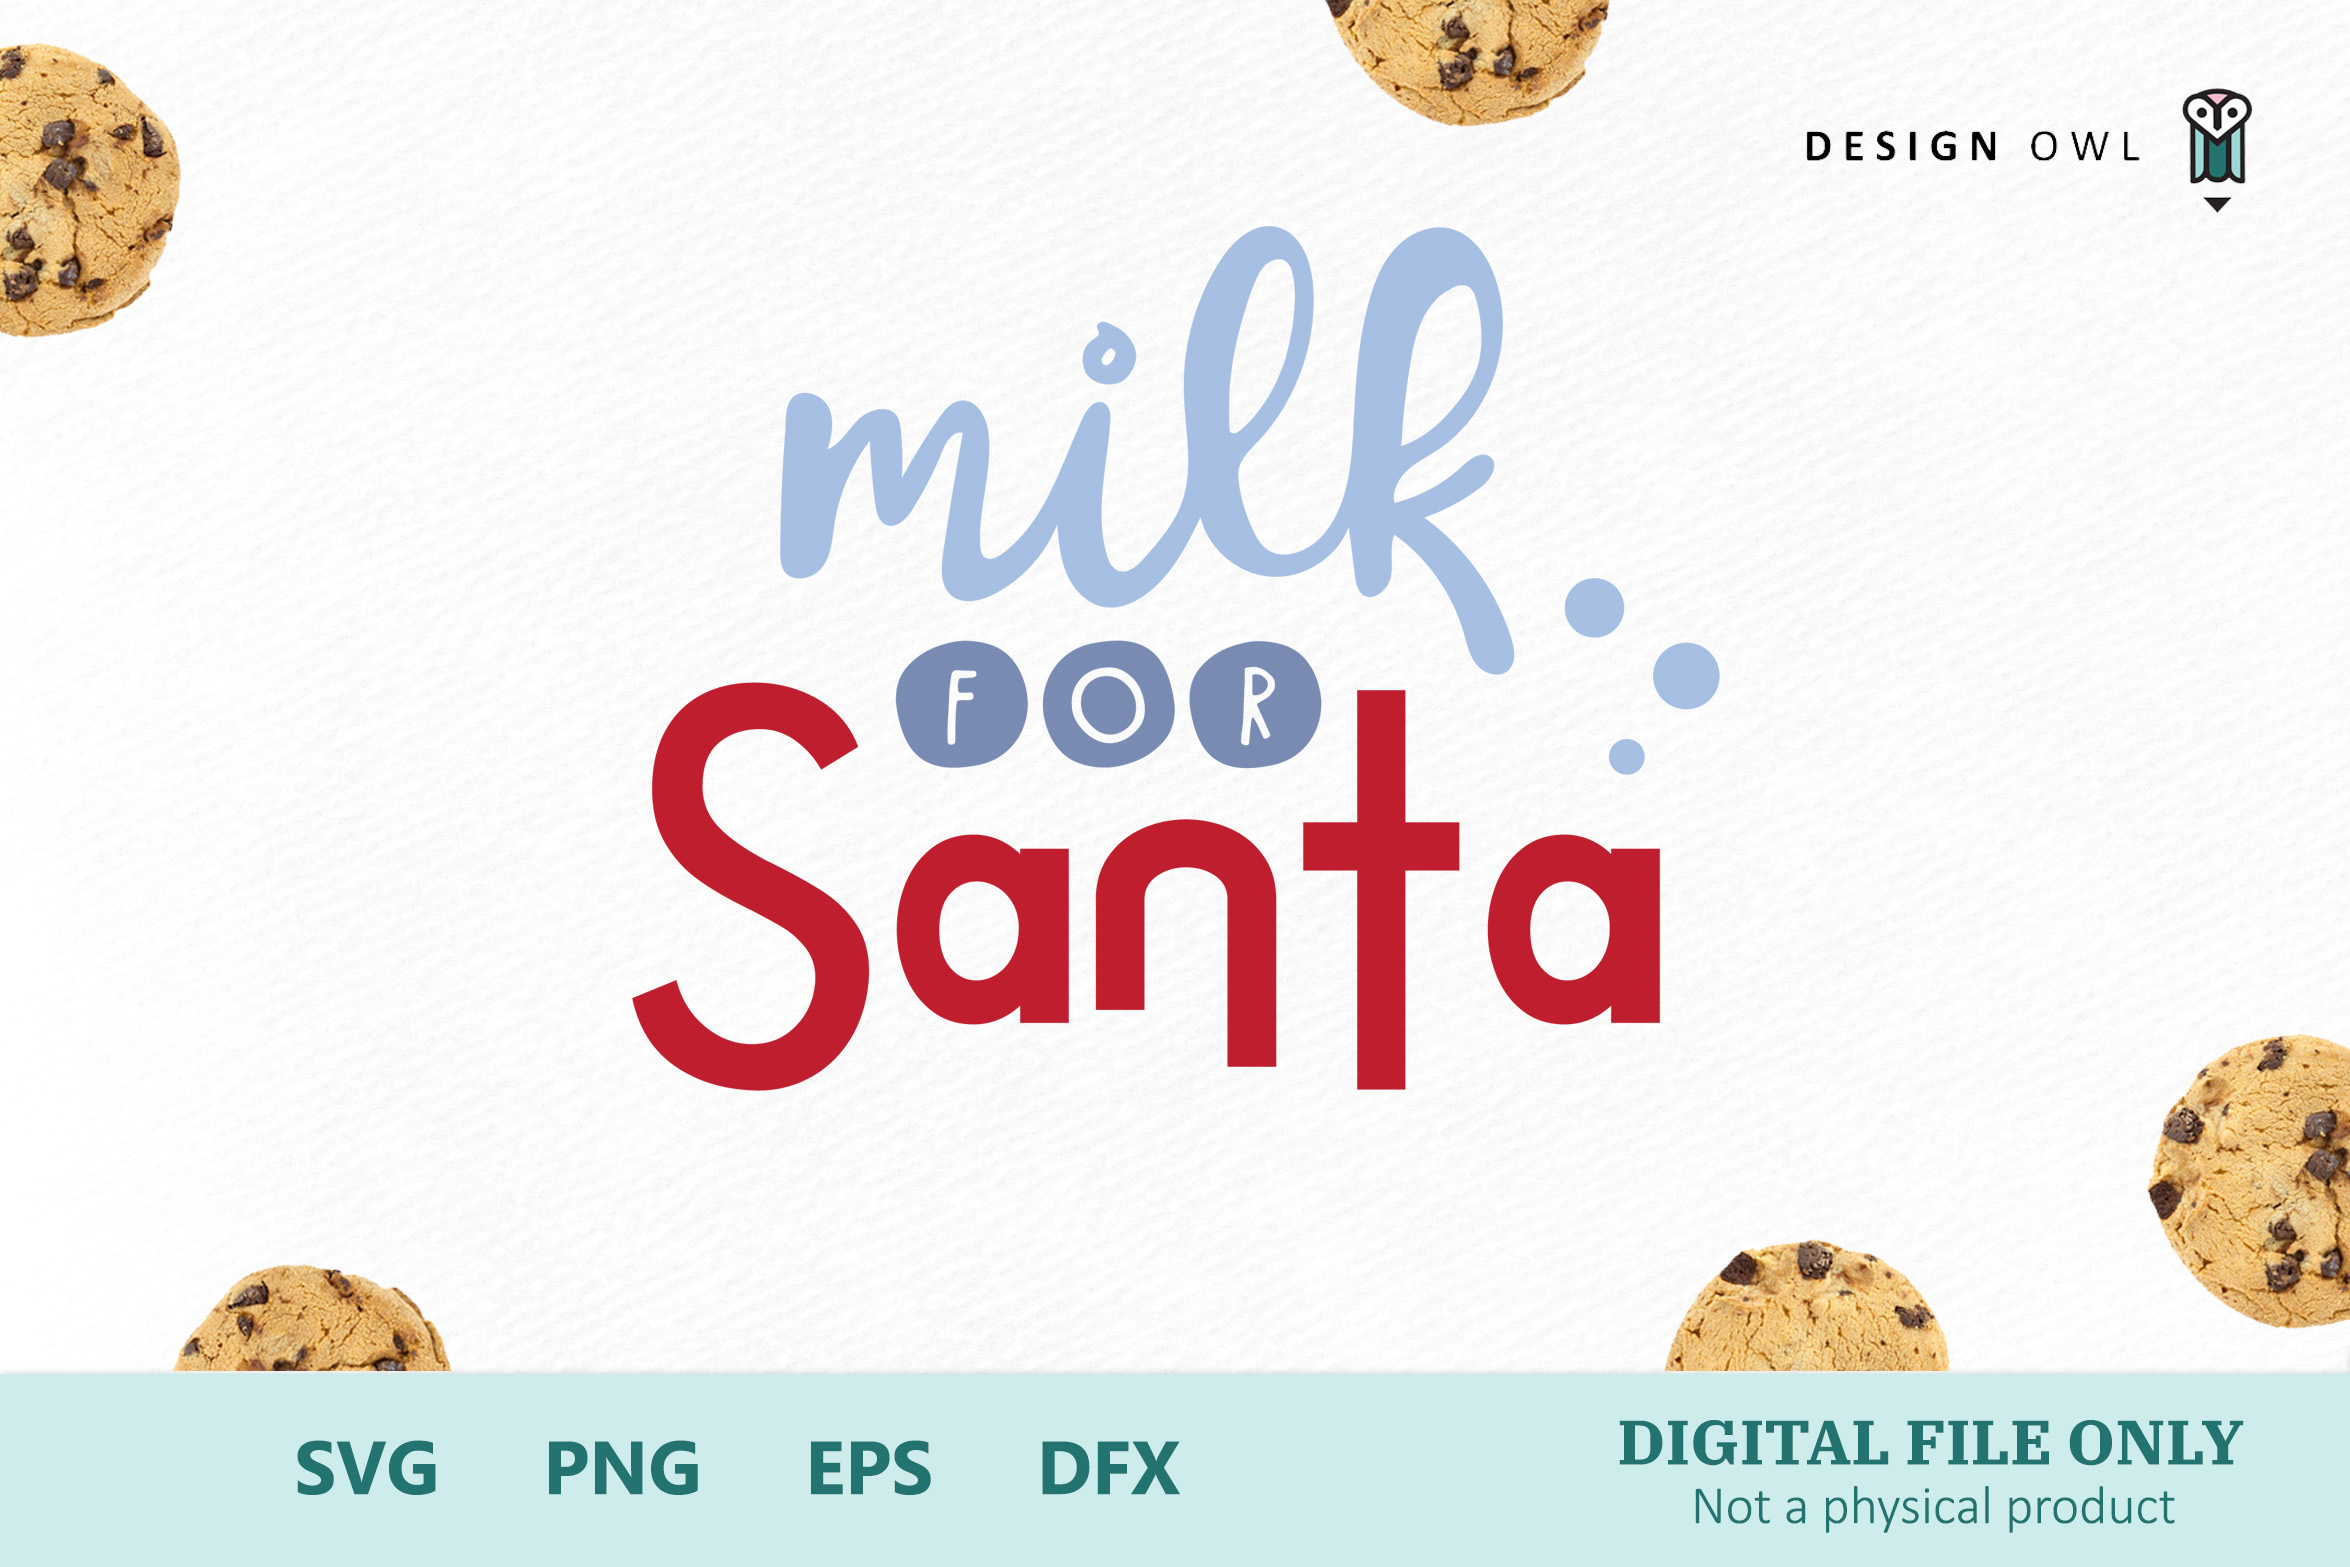 Cookies for Santa - Christmas SVG bundle